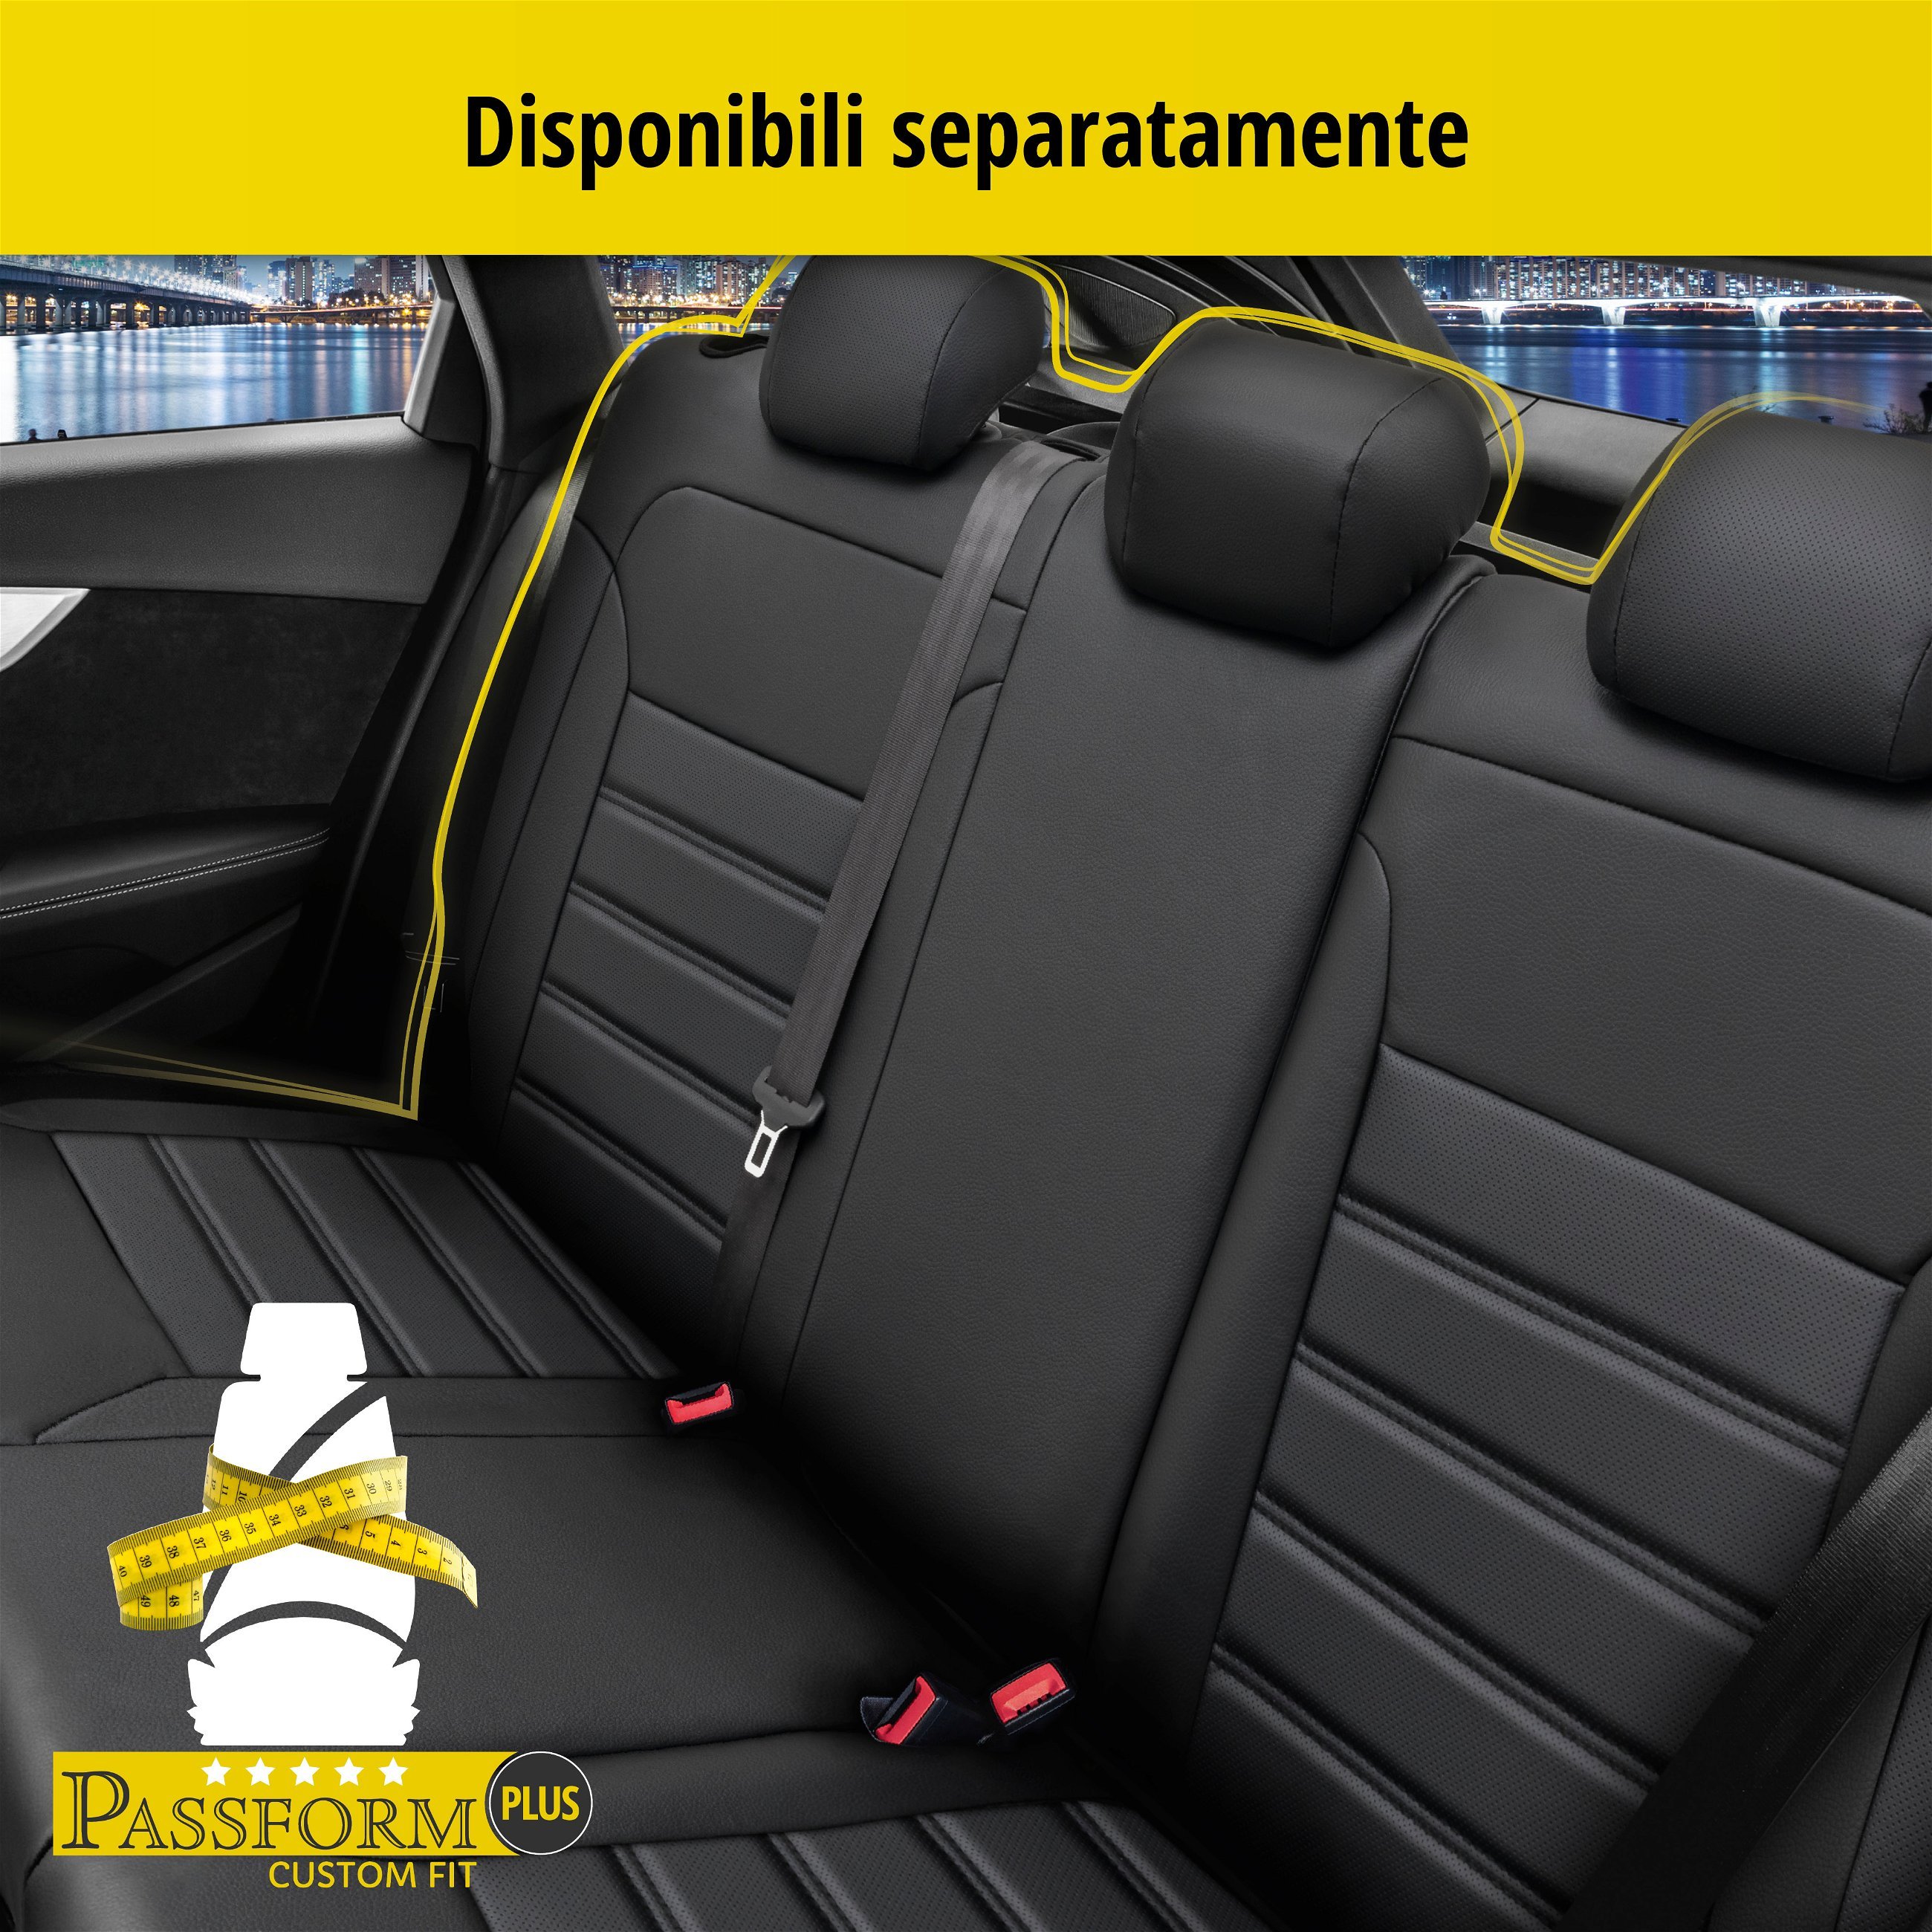 Coprisedili Robusto per VW Caravelle VI 04/2015-Oggi, 2 coprisedili per sedili normali